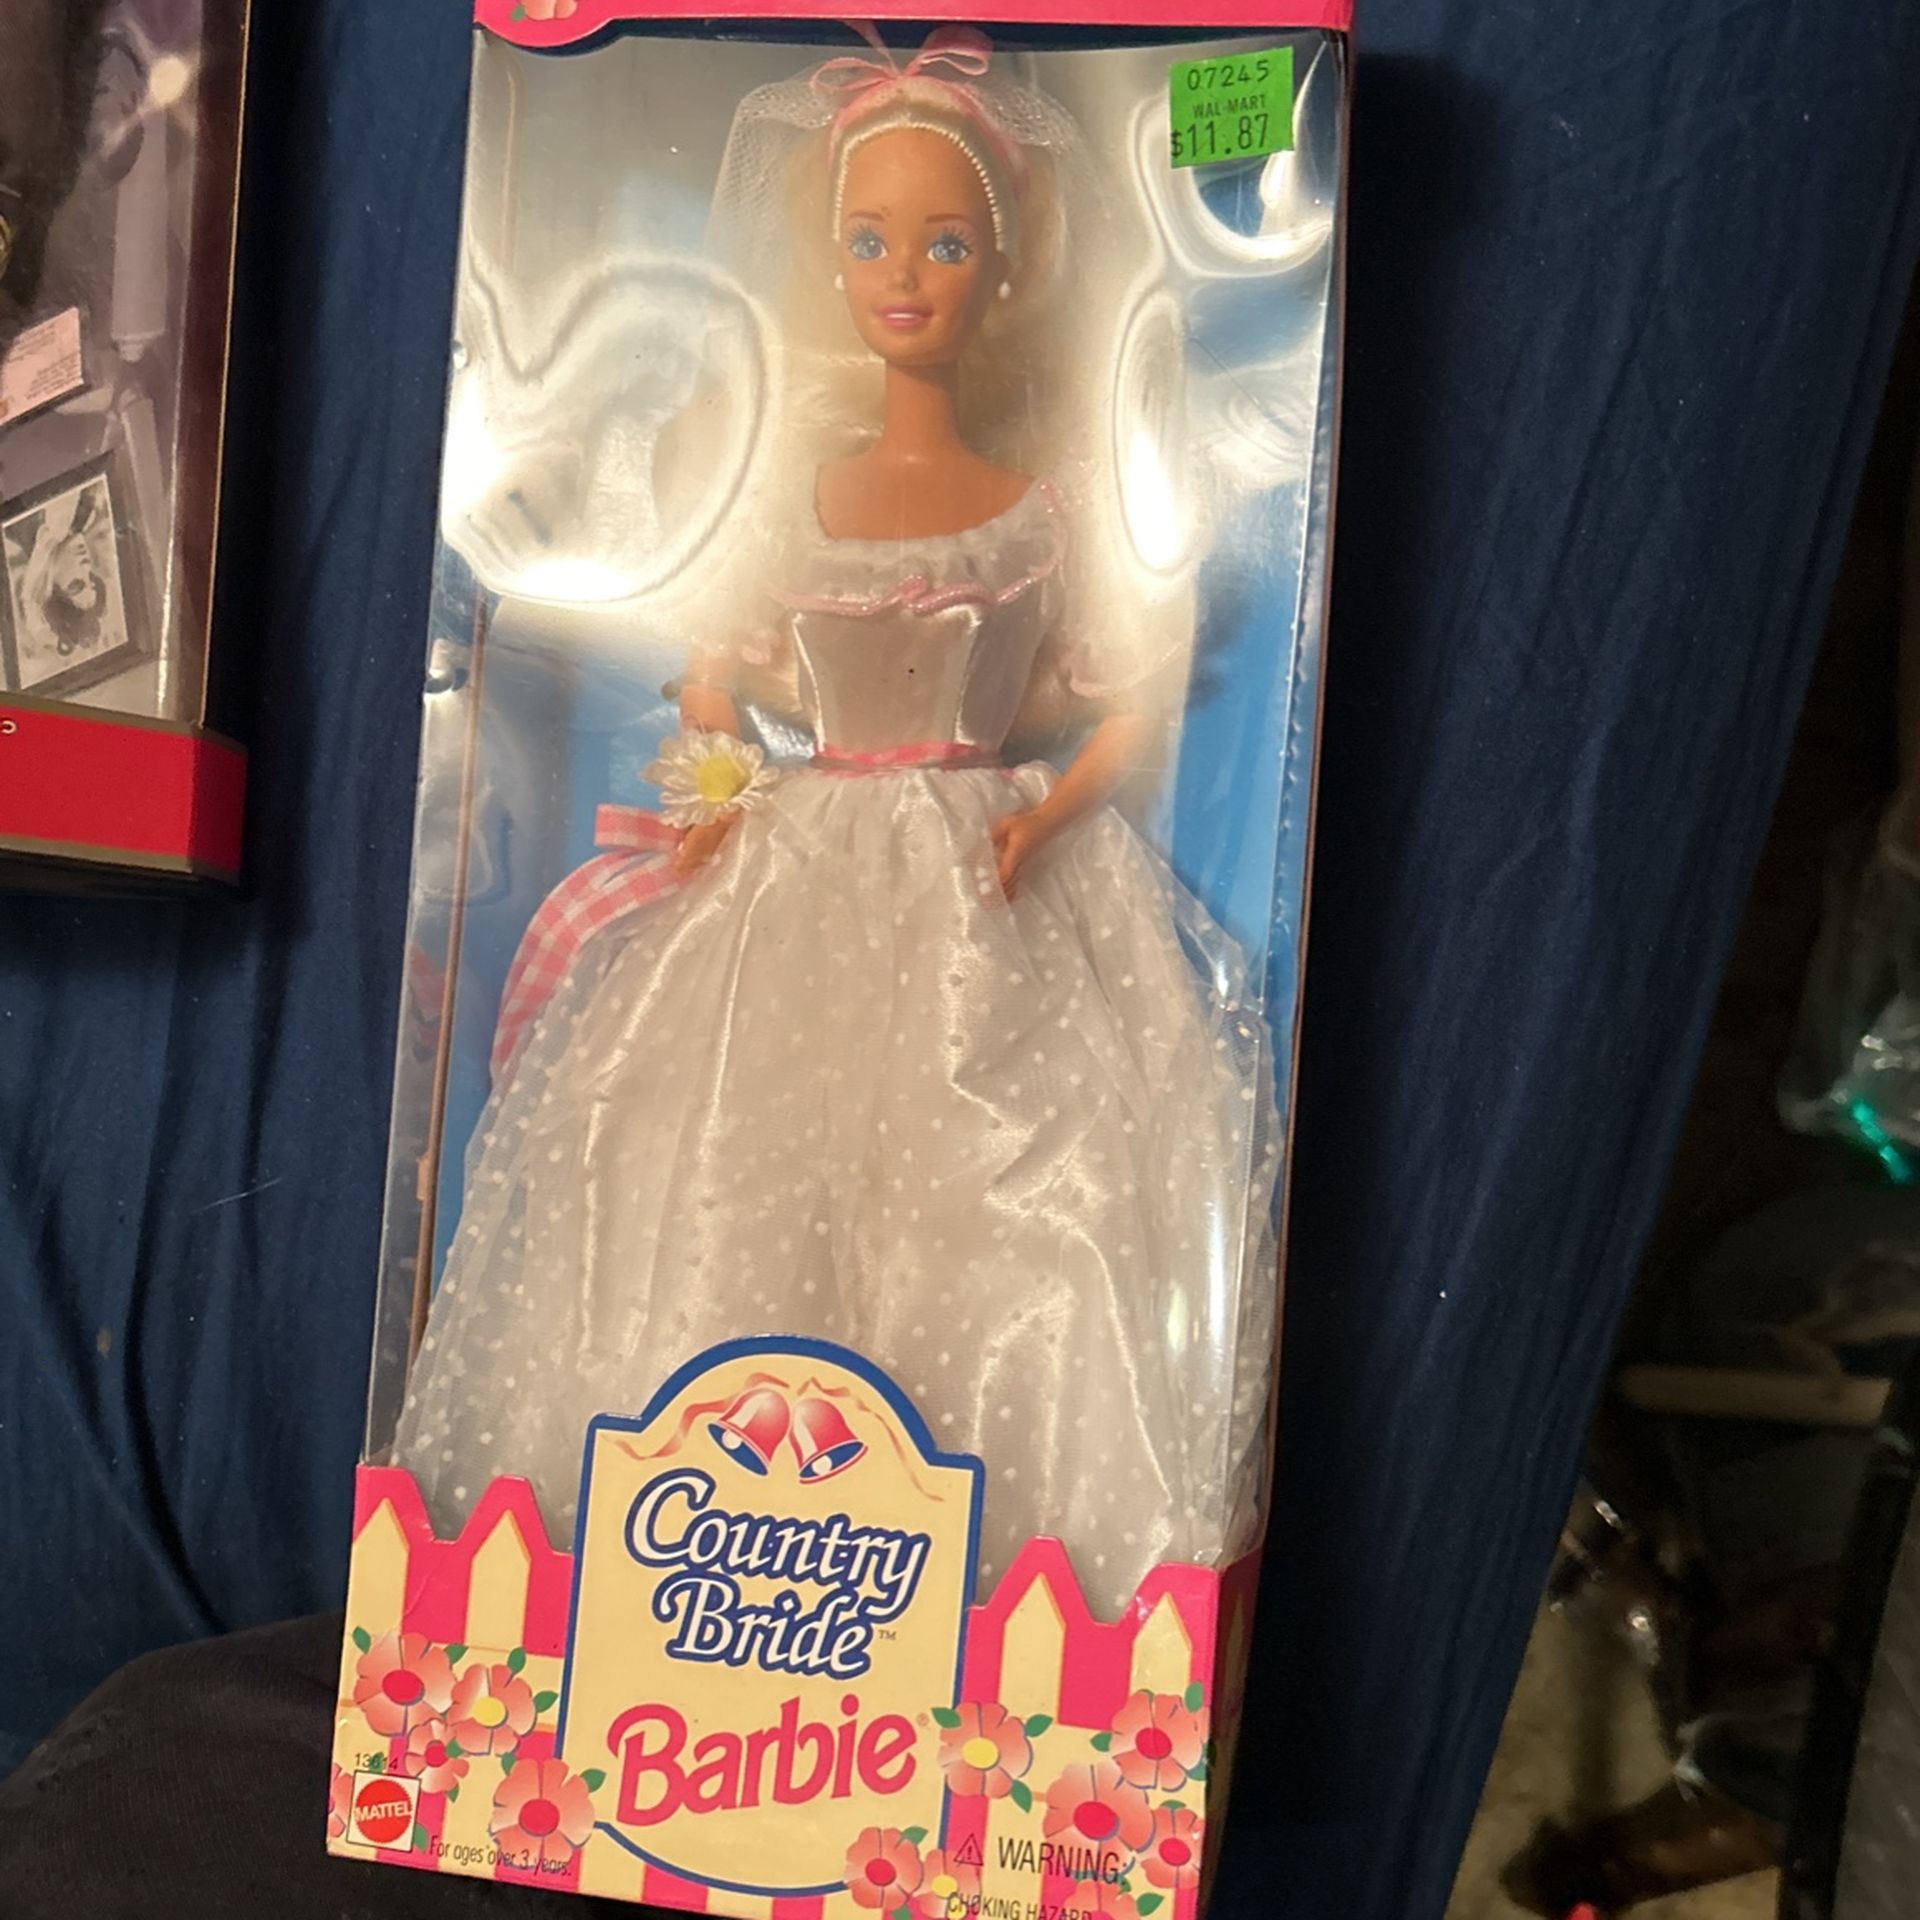 County Bride Barbie